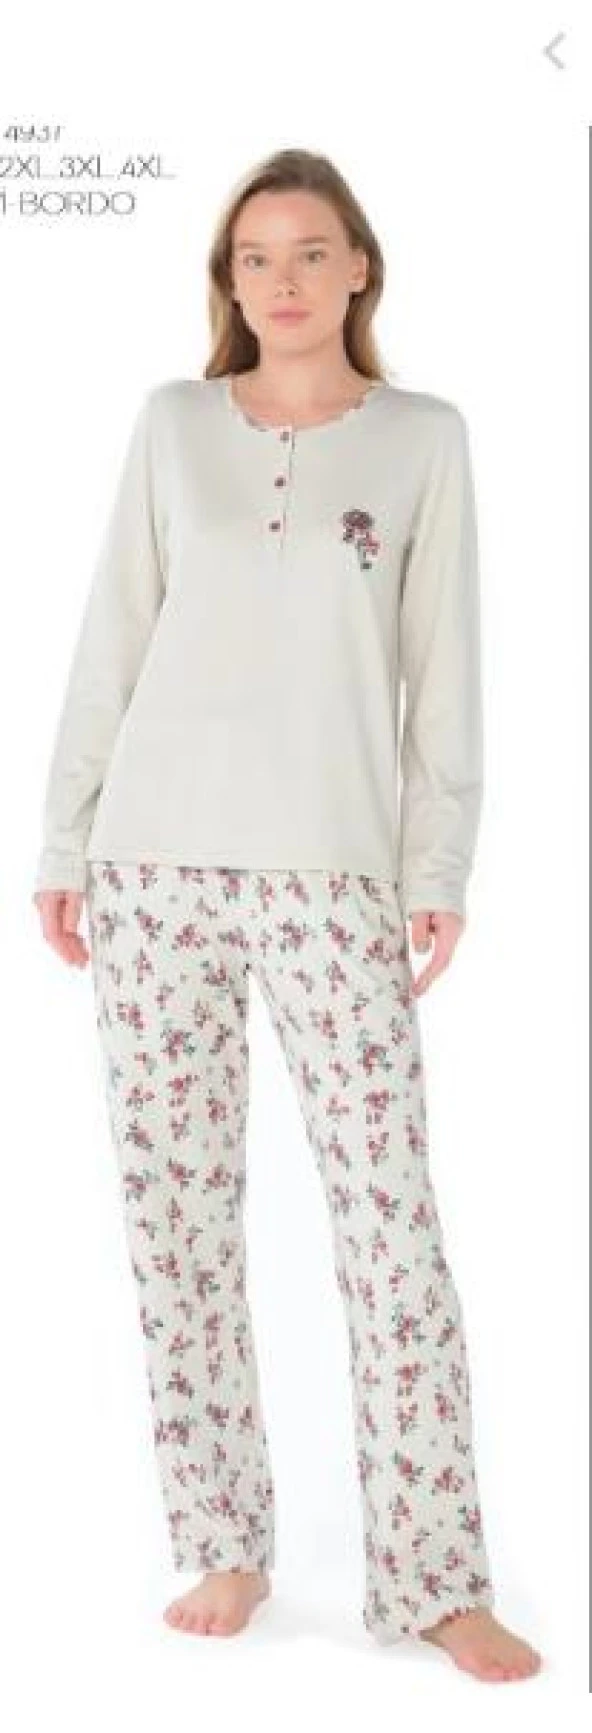 Feyza Kadın Büyük Beden Uzun Kol  Pijama Takımı 4937